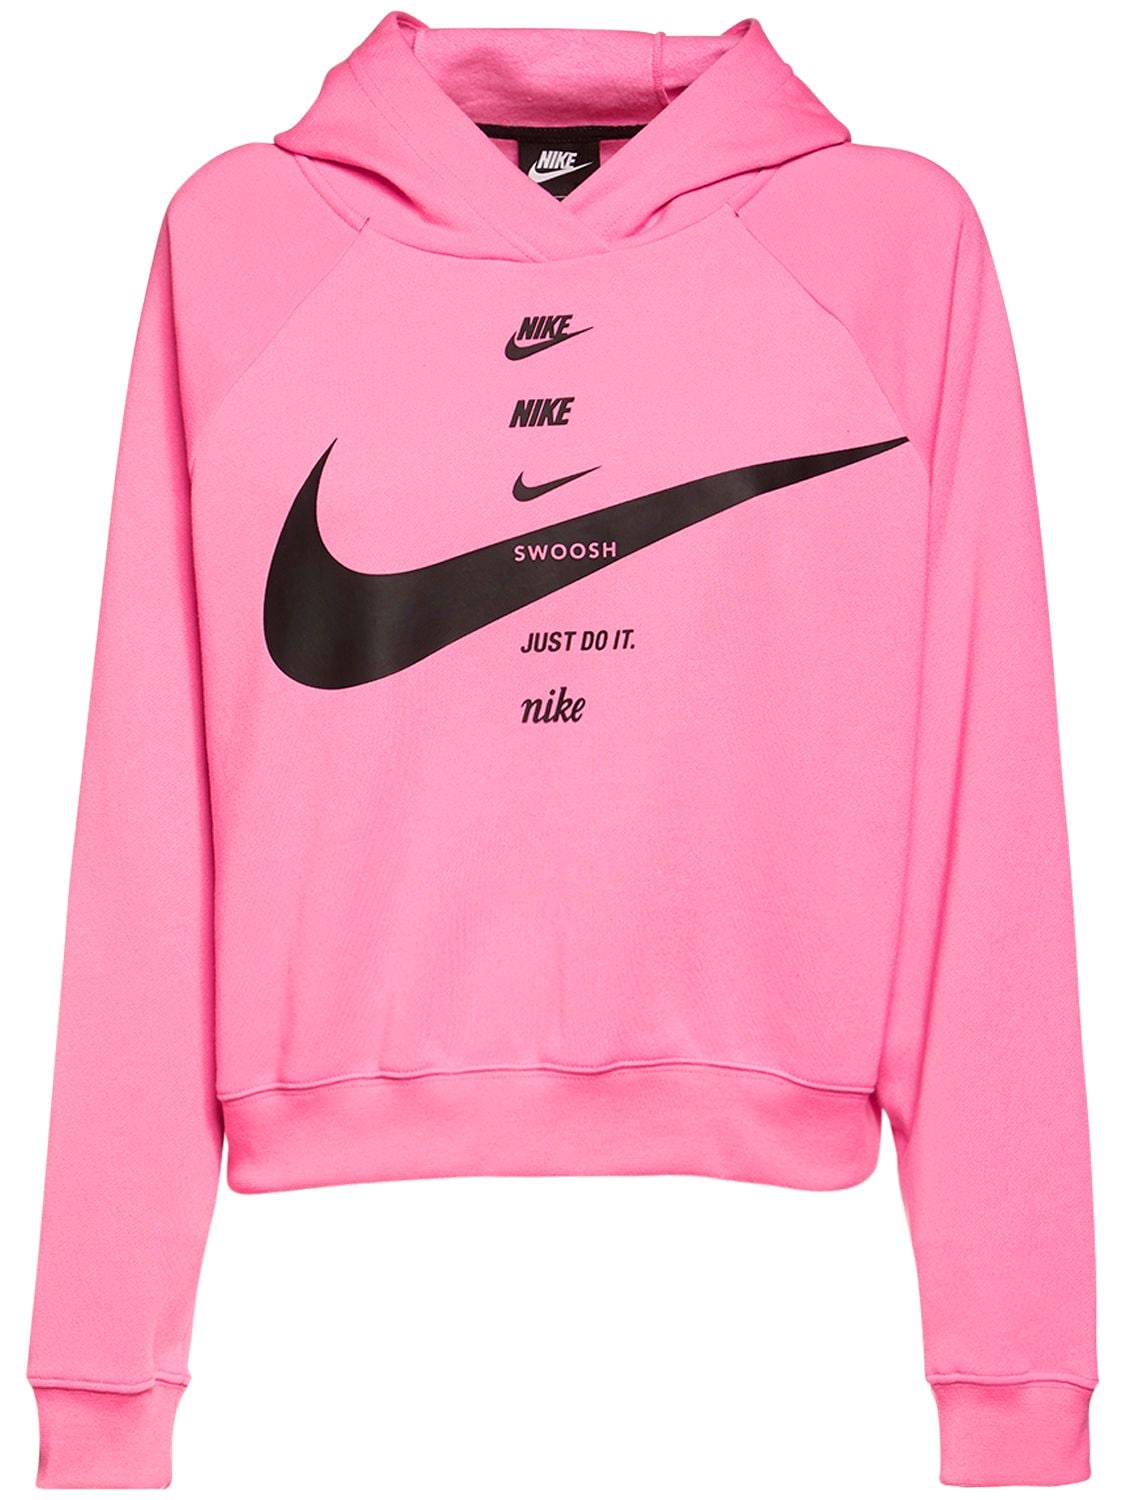 Nike Swoosh Print Sweatshirt Hoodie In Pink Glow